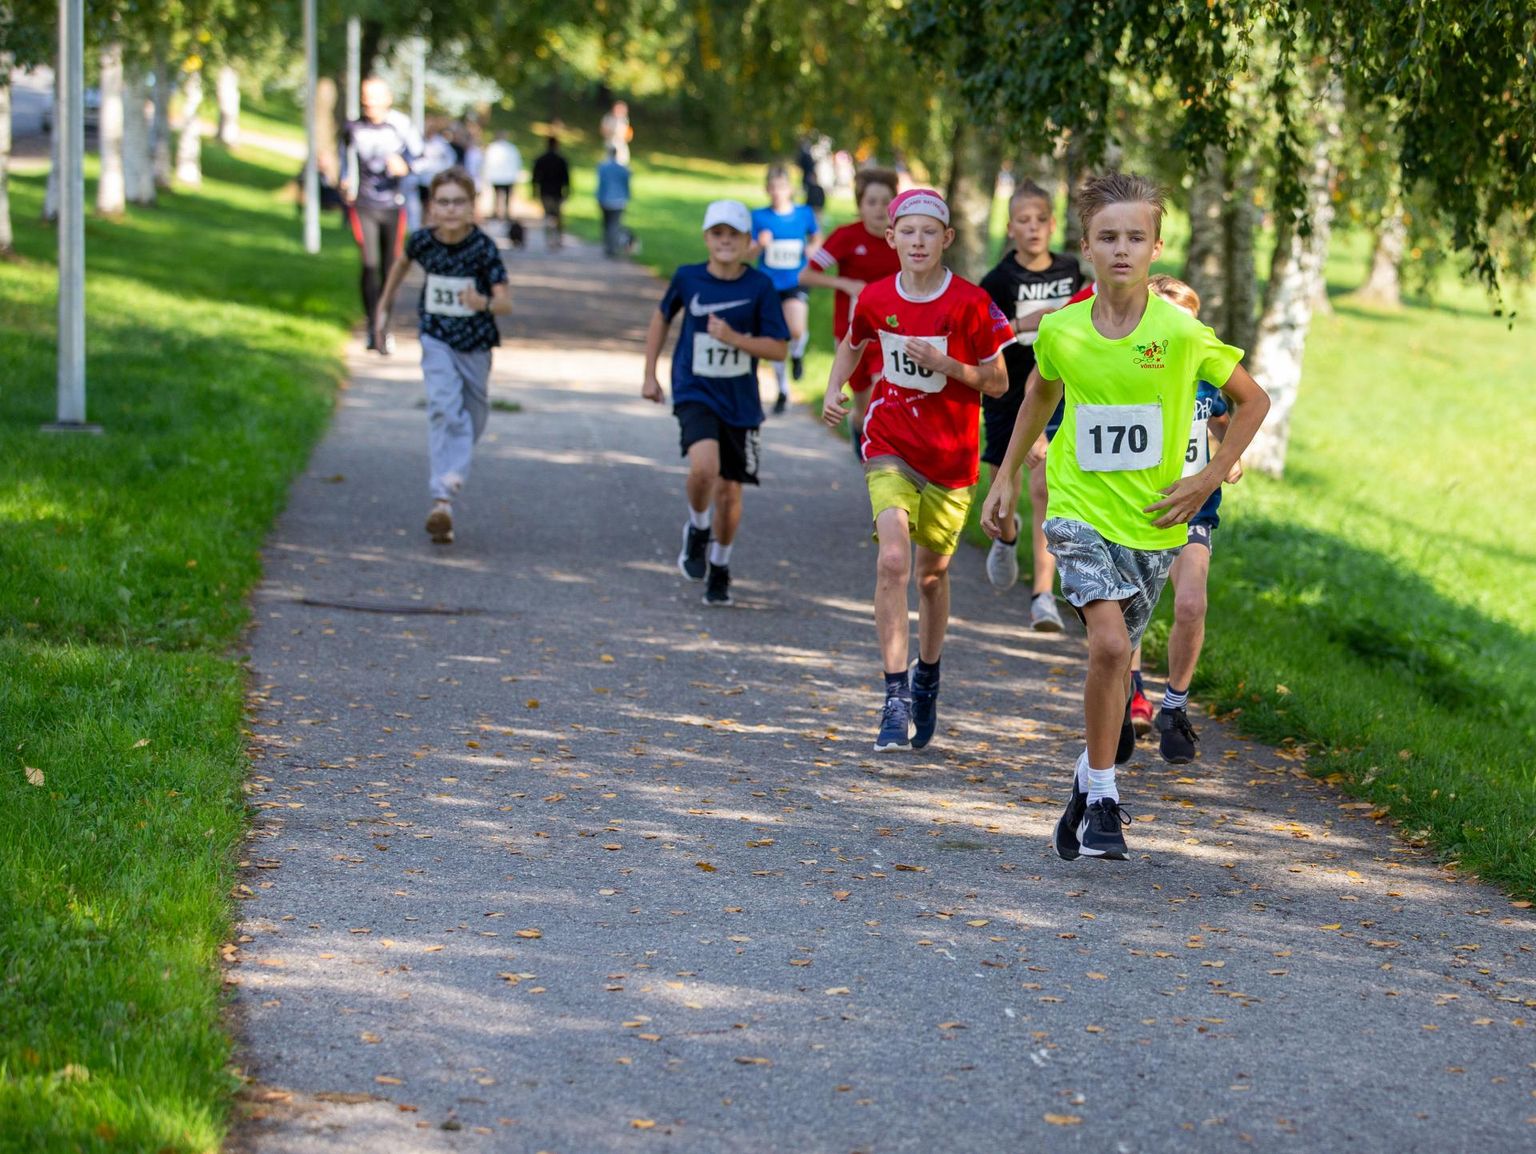 Laupäeval jooksid lapsed 74. korda ümber Paala järve. Pildil on esiplaanil Marken Varis (170), kes saavutas 12-aastaste poiste seas teise koha.